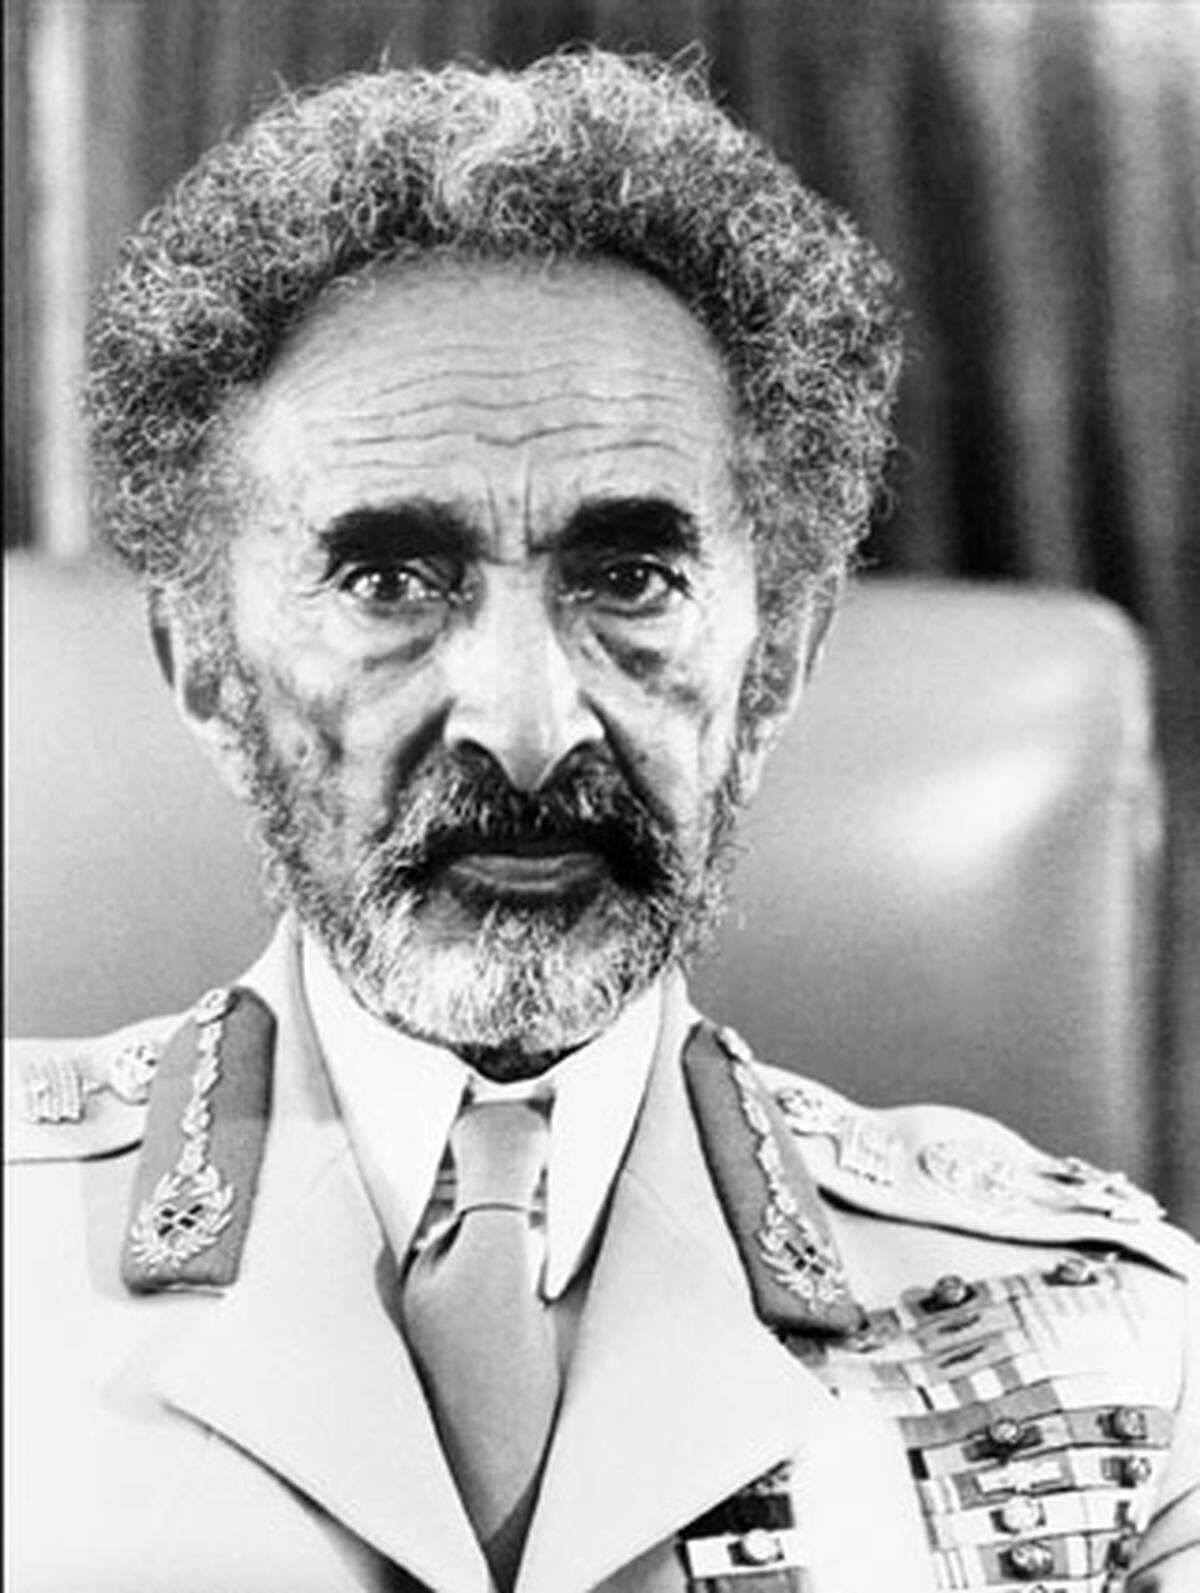 Der äthiopische Kaiser Haile Selassie wird von putschenden Offizieren abgesetzt und gefangengenommen.